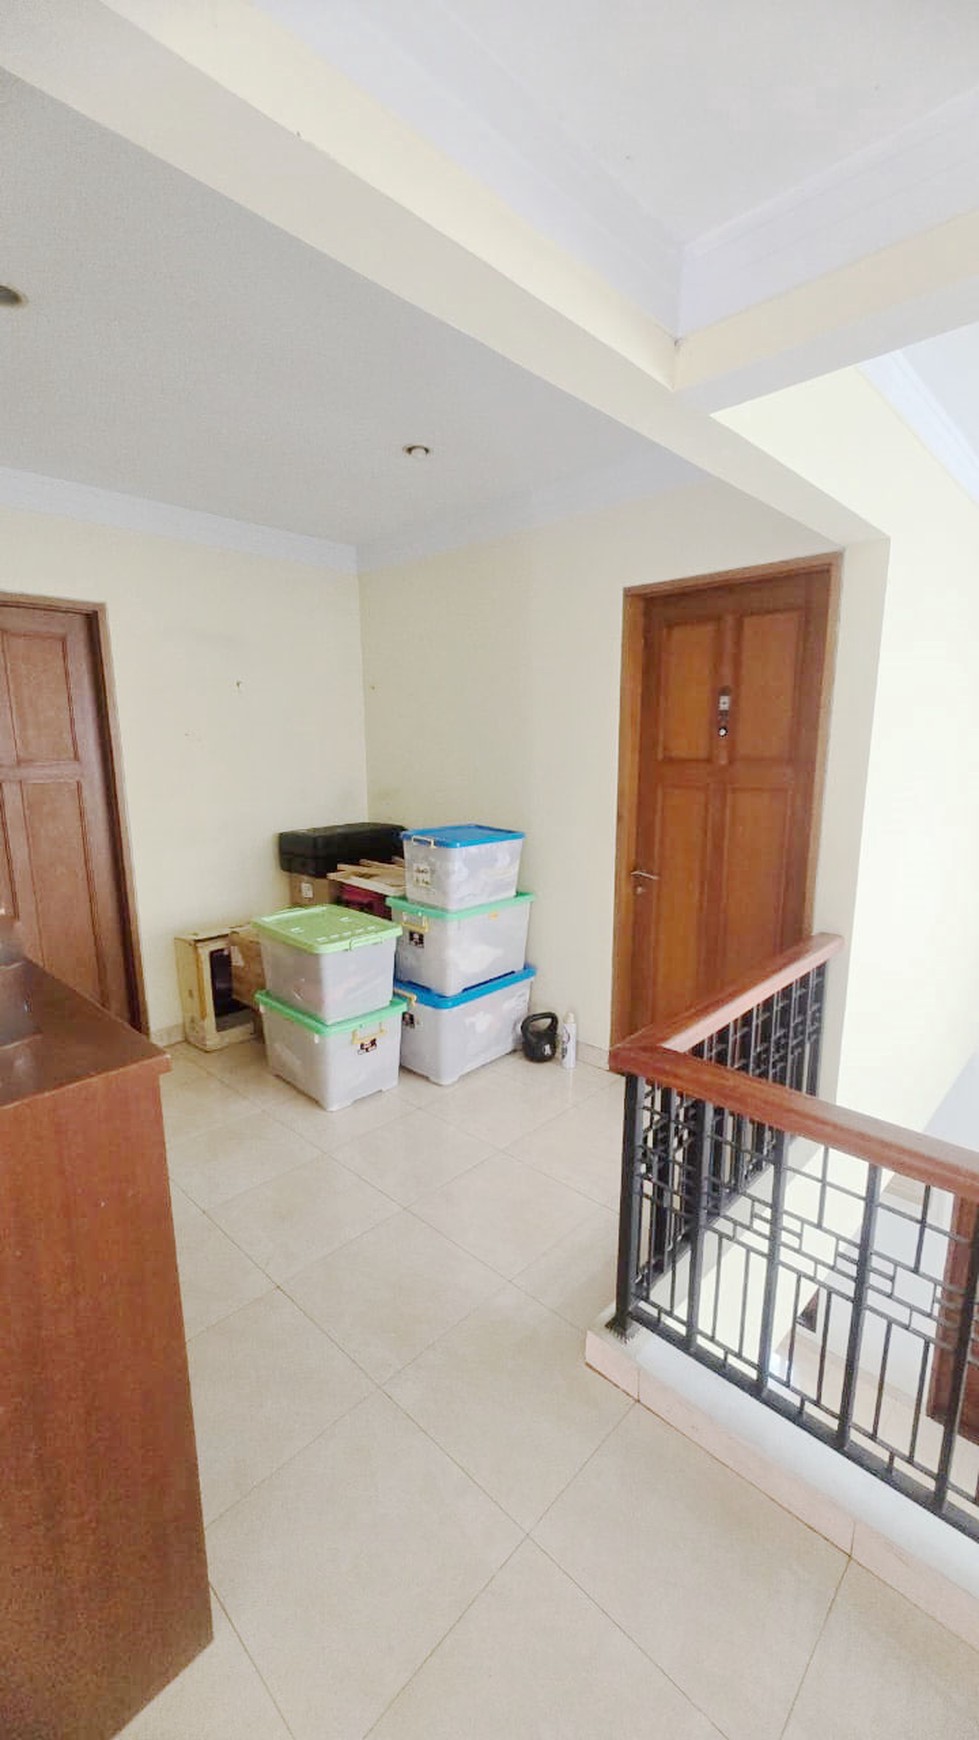 Rumah di Menteng Residence Bintaro, siap huni di Sektor 9